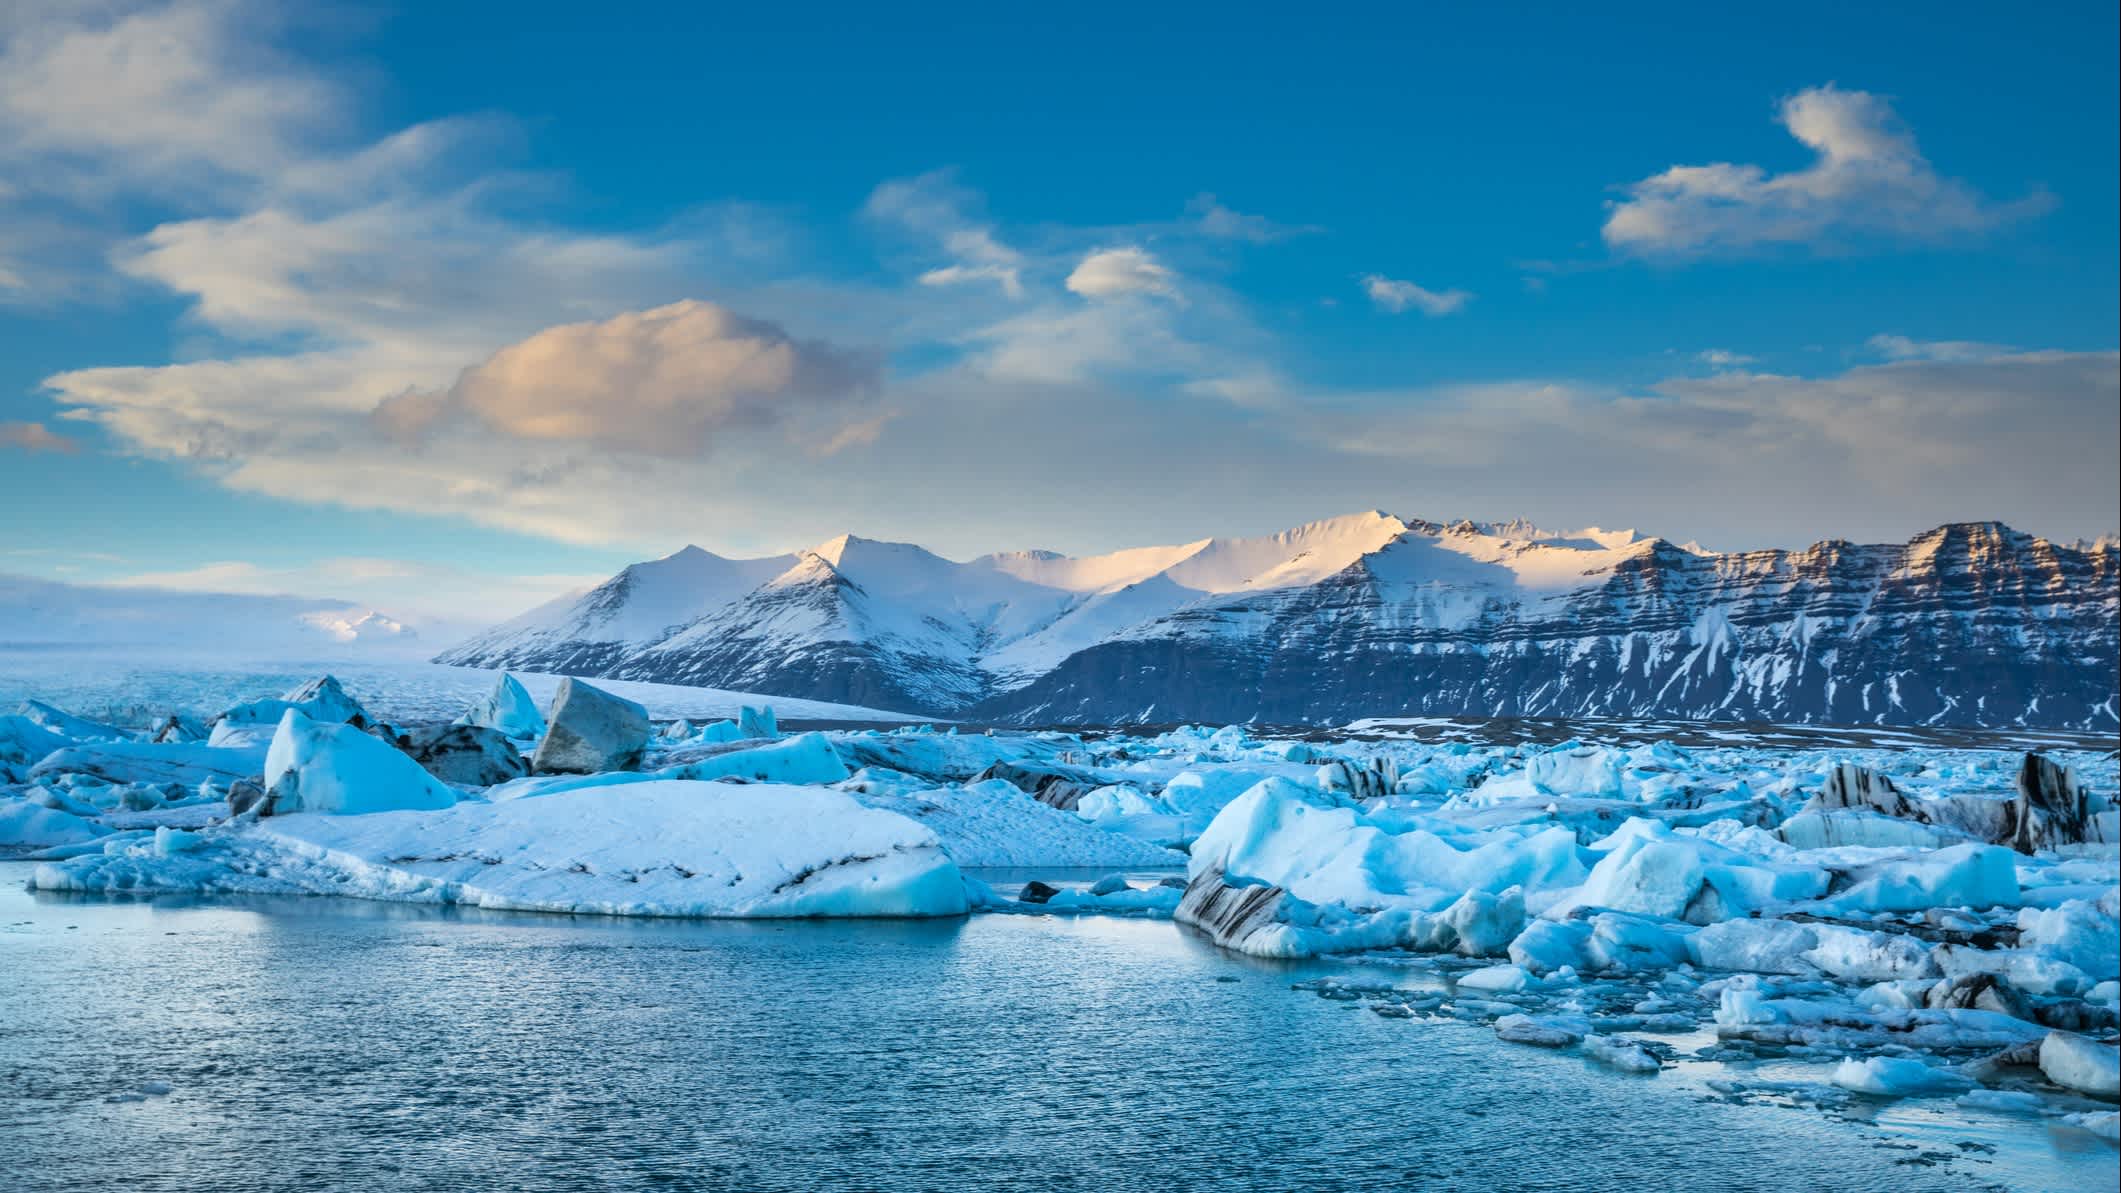 Des icebergs bleus flottent dans la lagune près du glacier Vatnajokull, Islande.

